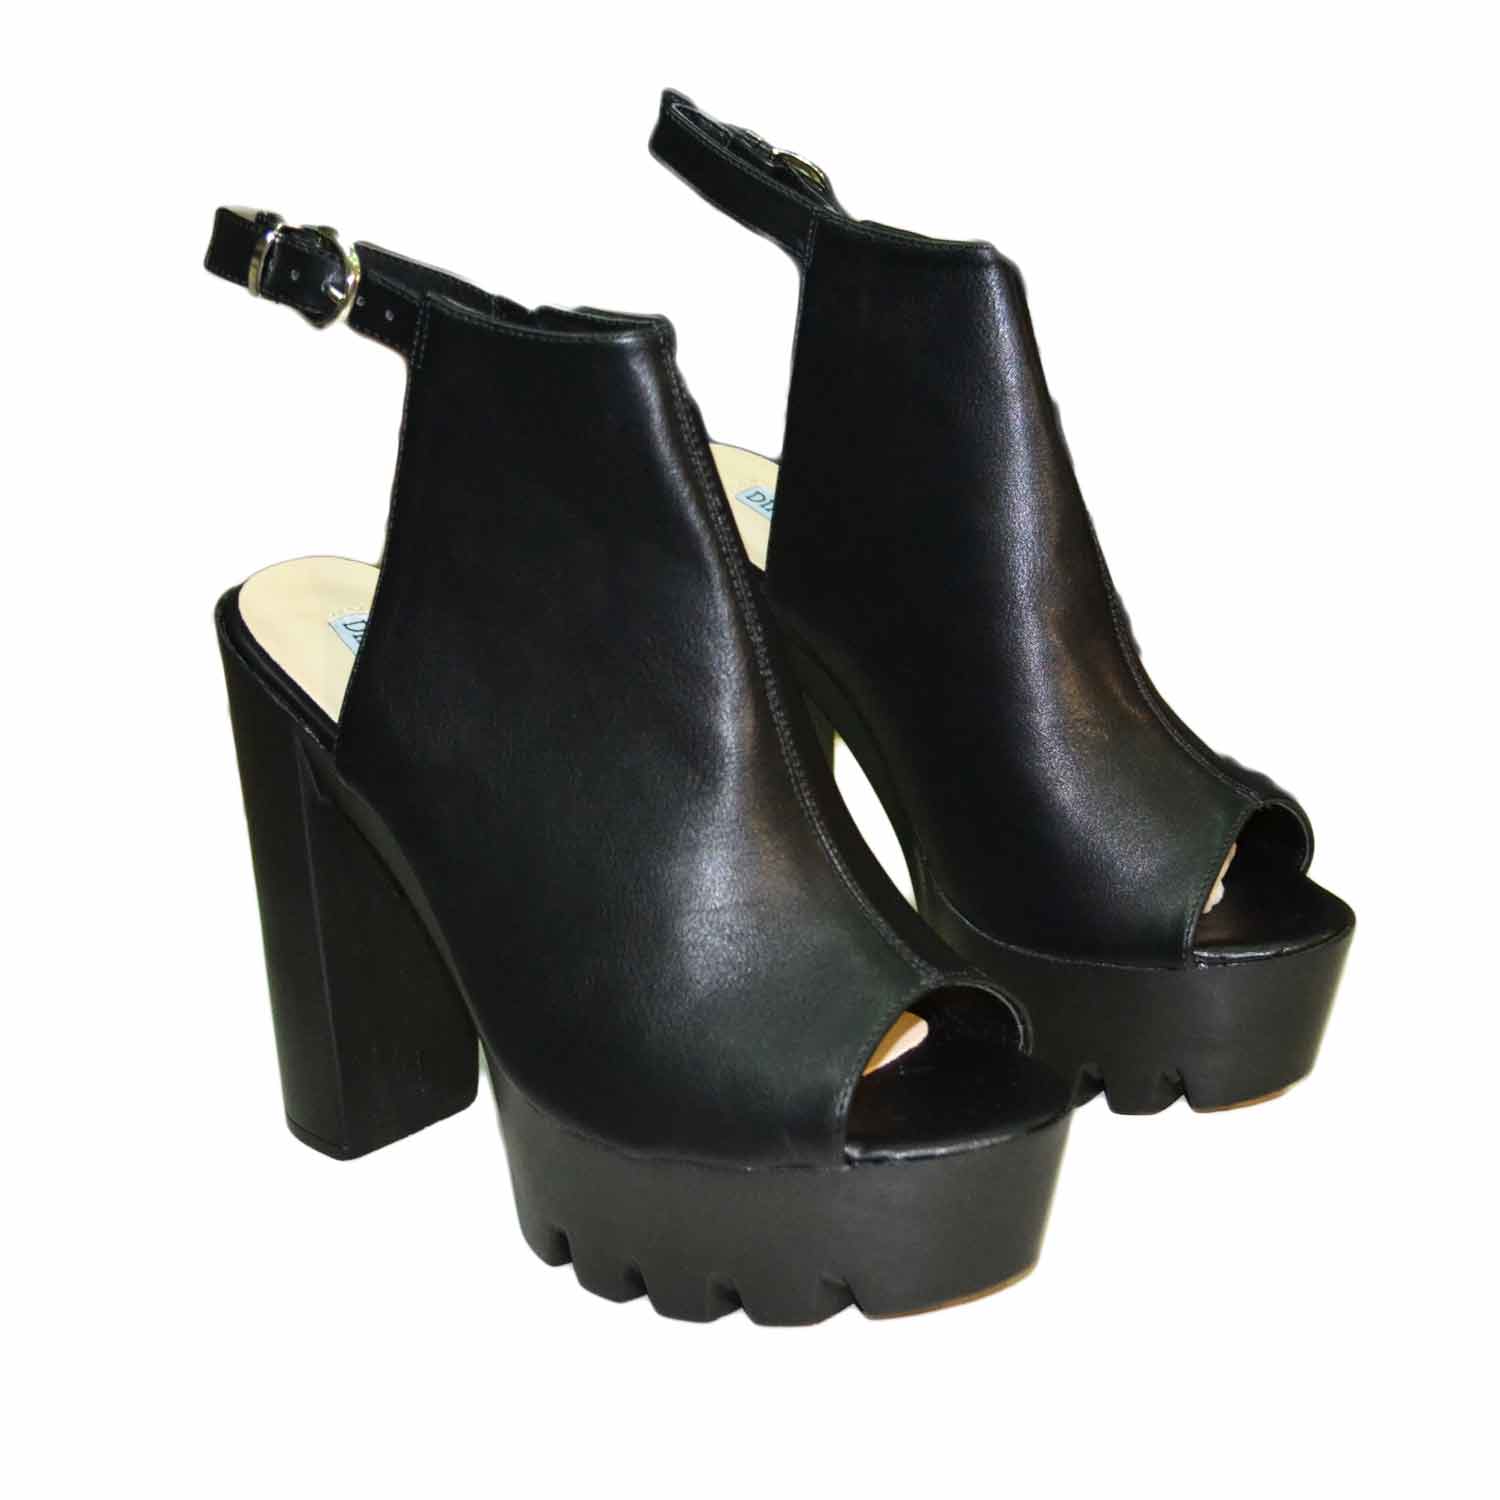 Scarpe donna calzature tacco jeffry nero alto comfort con cinturino ...